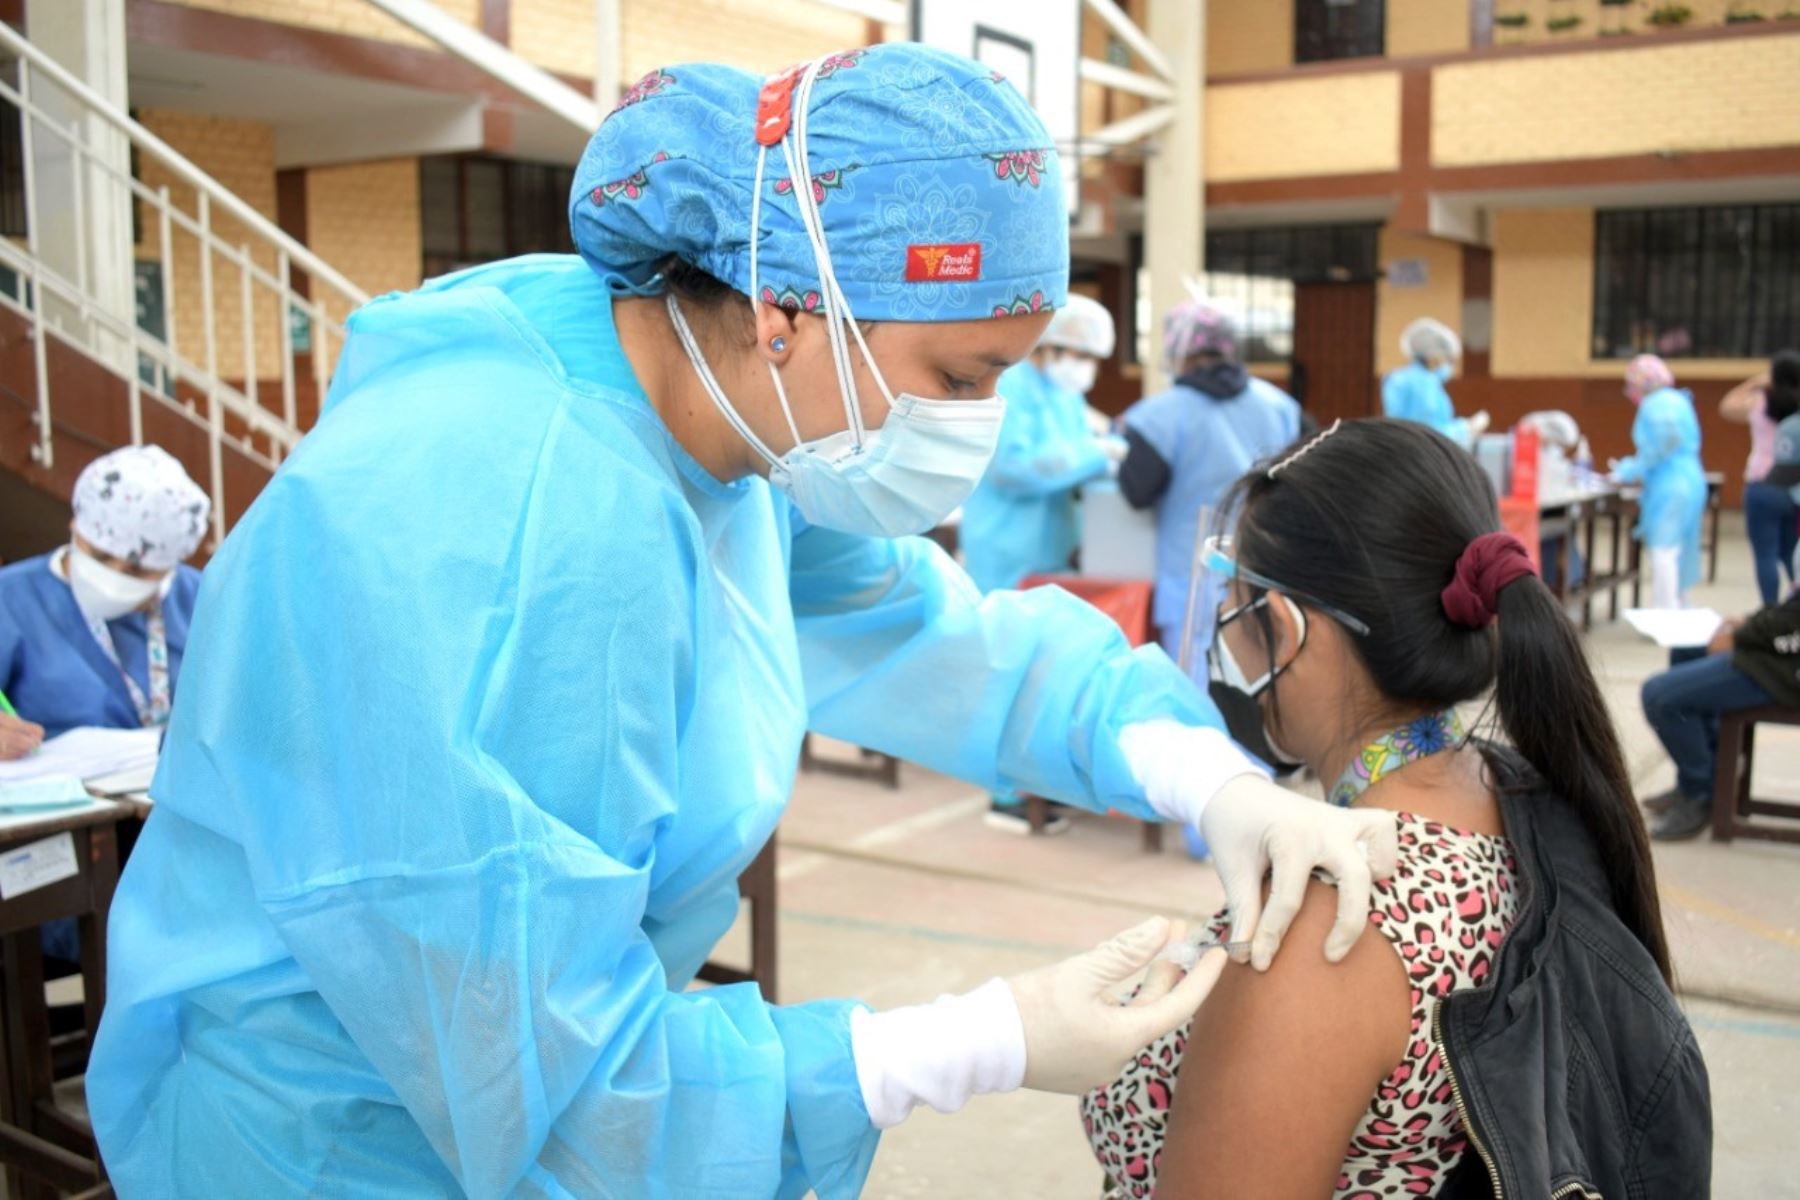 Gerencia Regional de Salud de Lambayeque programó una jornada triple para vacunar a personas de 25 años a más. Foto: ANDINA/Difusión